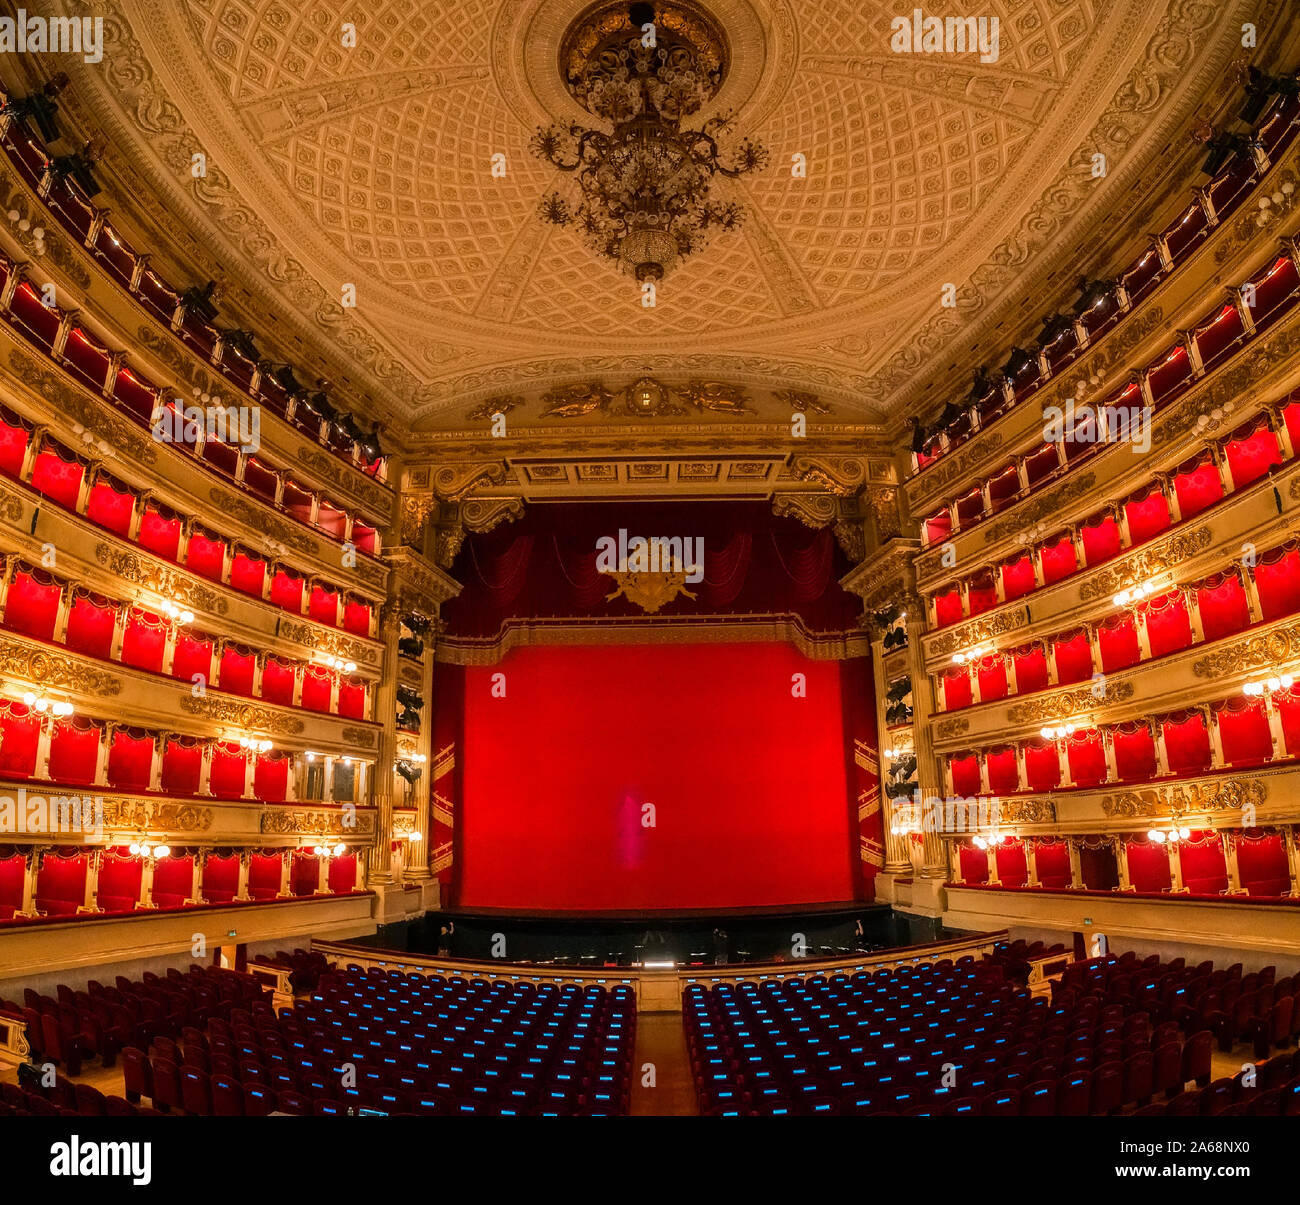 Innenraum der berühmten Mailänder Scala (Teatro alla Scala, 1778) - eine  Oper in Mailand Stockfotografie - Alamy